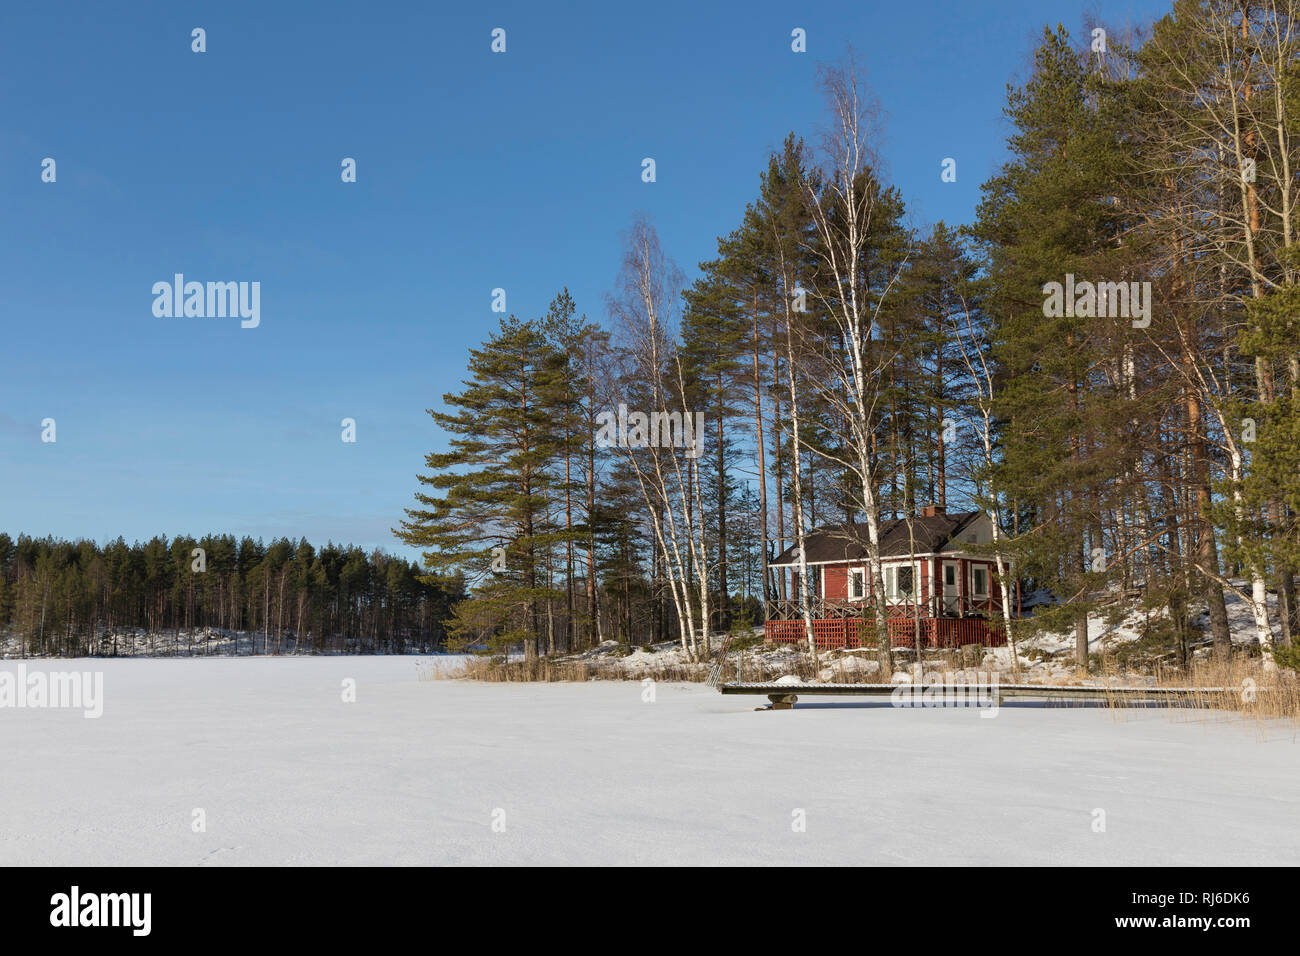 Finnland, Saimaa-Gebiet, Ferienhaus auf Insel im Winter Banque D'Images